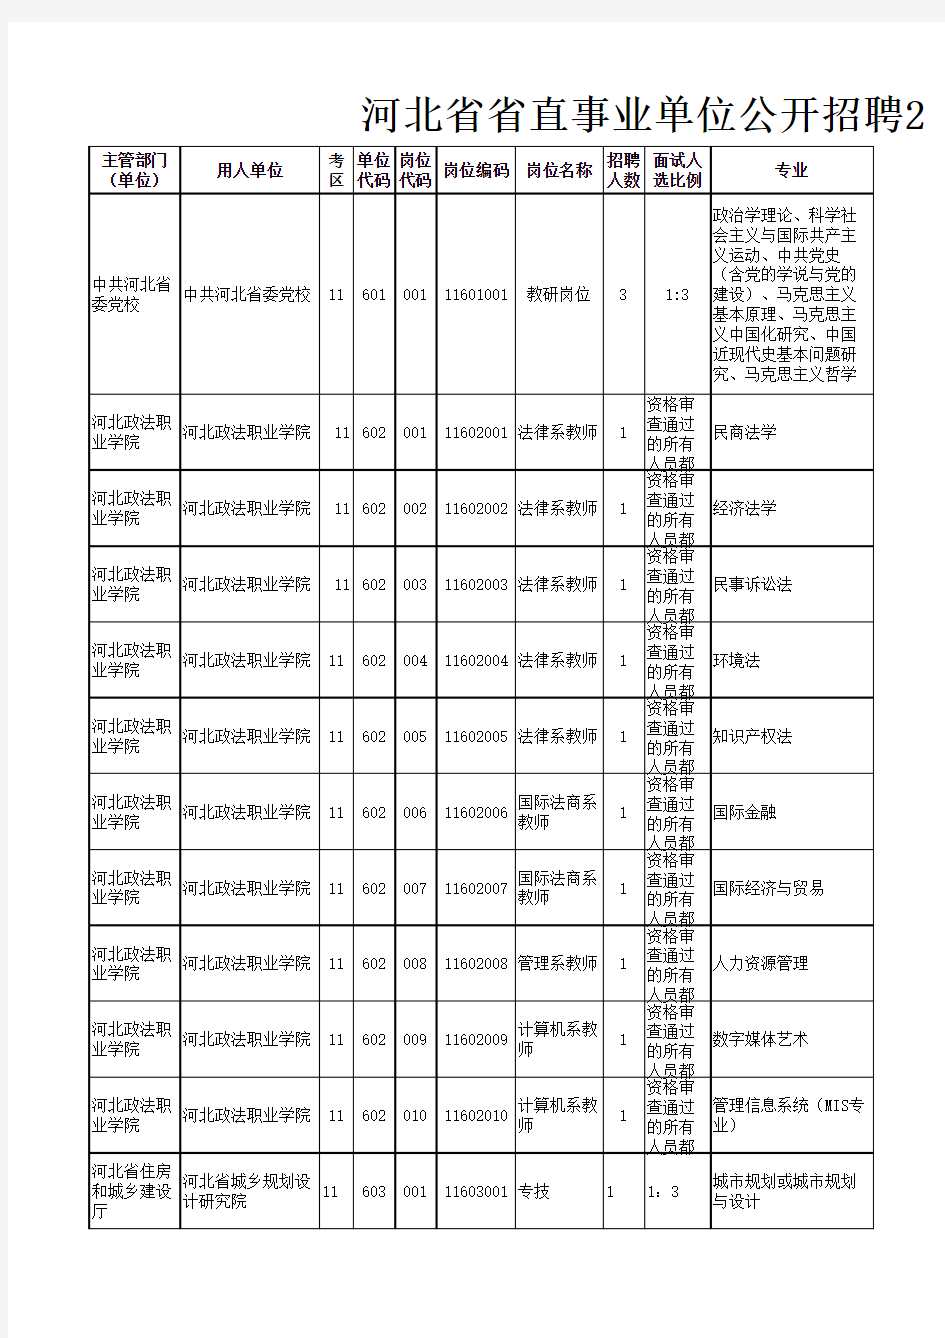 河北省省直事业单位公开招聘2015年单位招聘岗位信息表